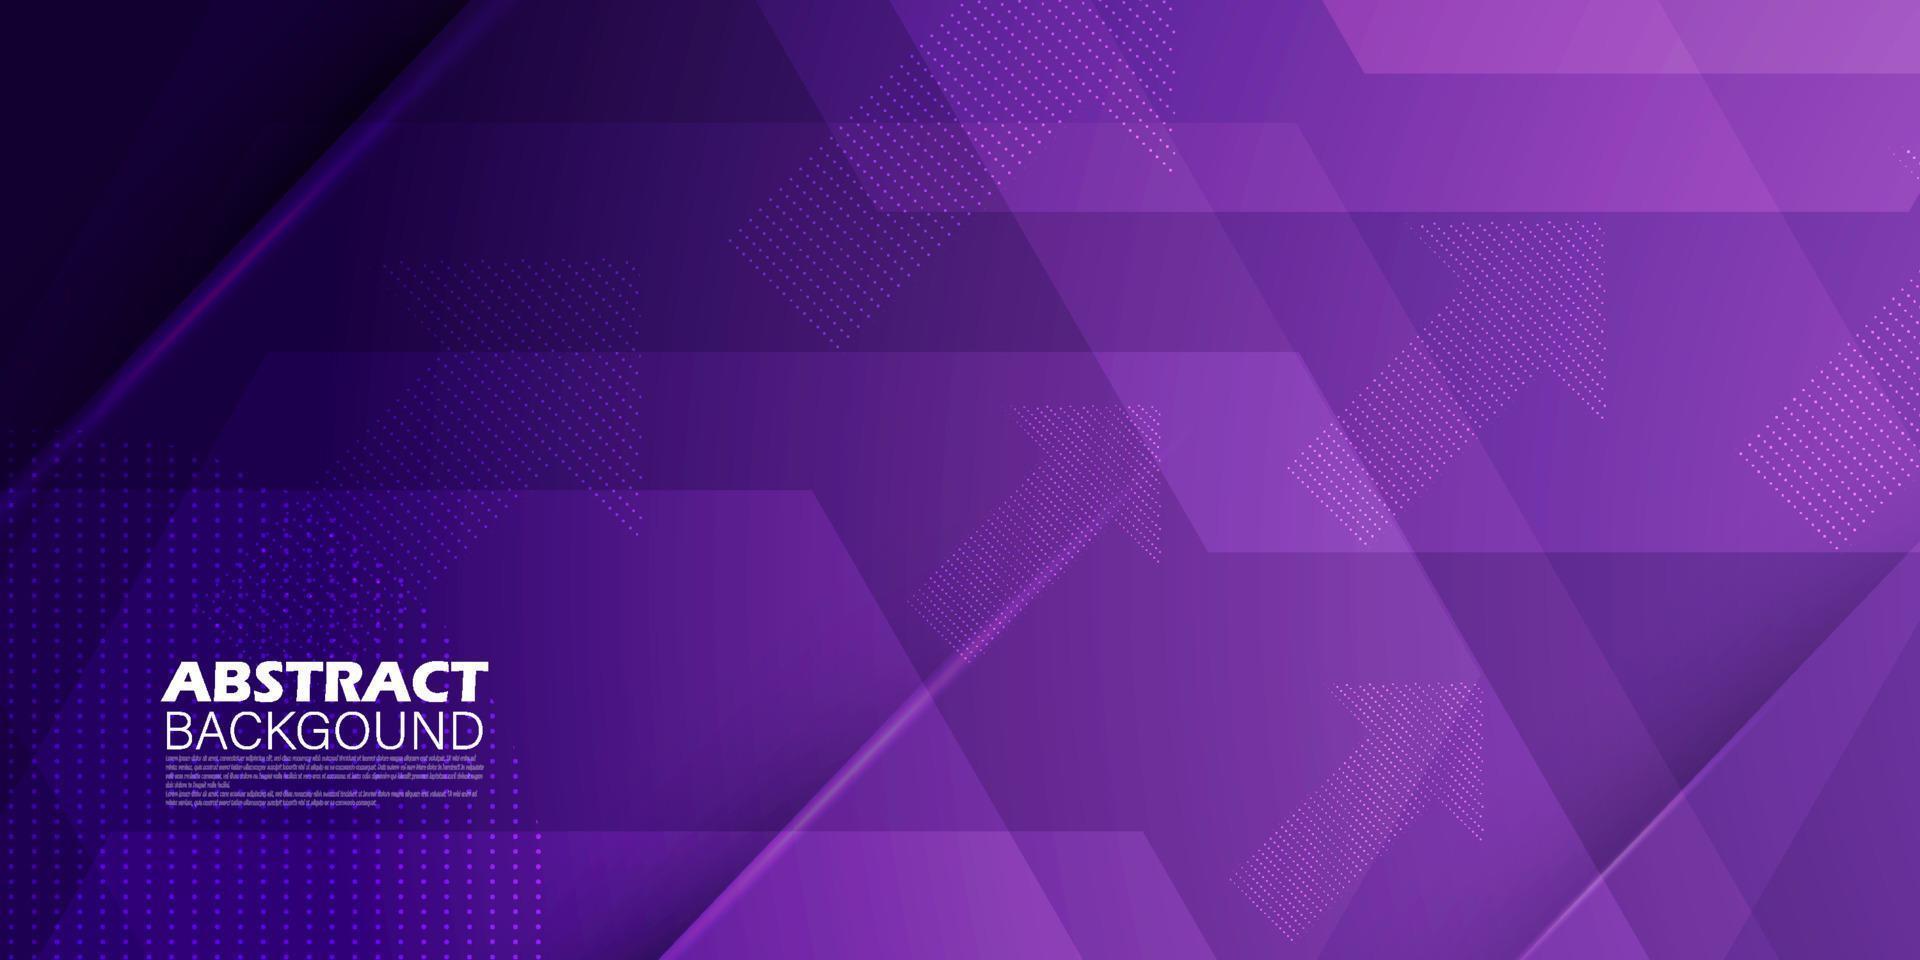 modernes abstraktes violettes Lavendelpurpur mit Liniensteigungshintergrund. einfaches Muster für Display-Produktanzeigen-Website-Vorlagen-Tapetenposter. eps10-Vektor vektor